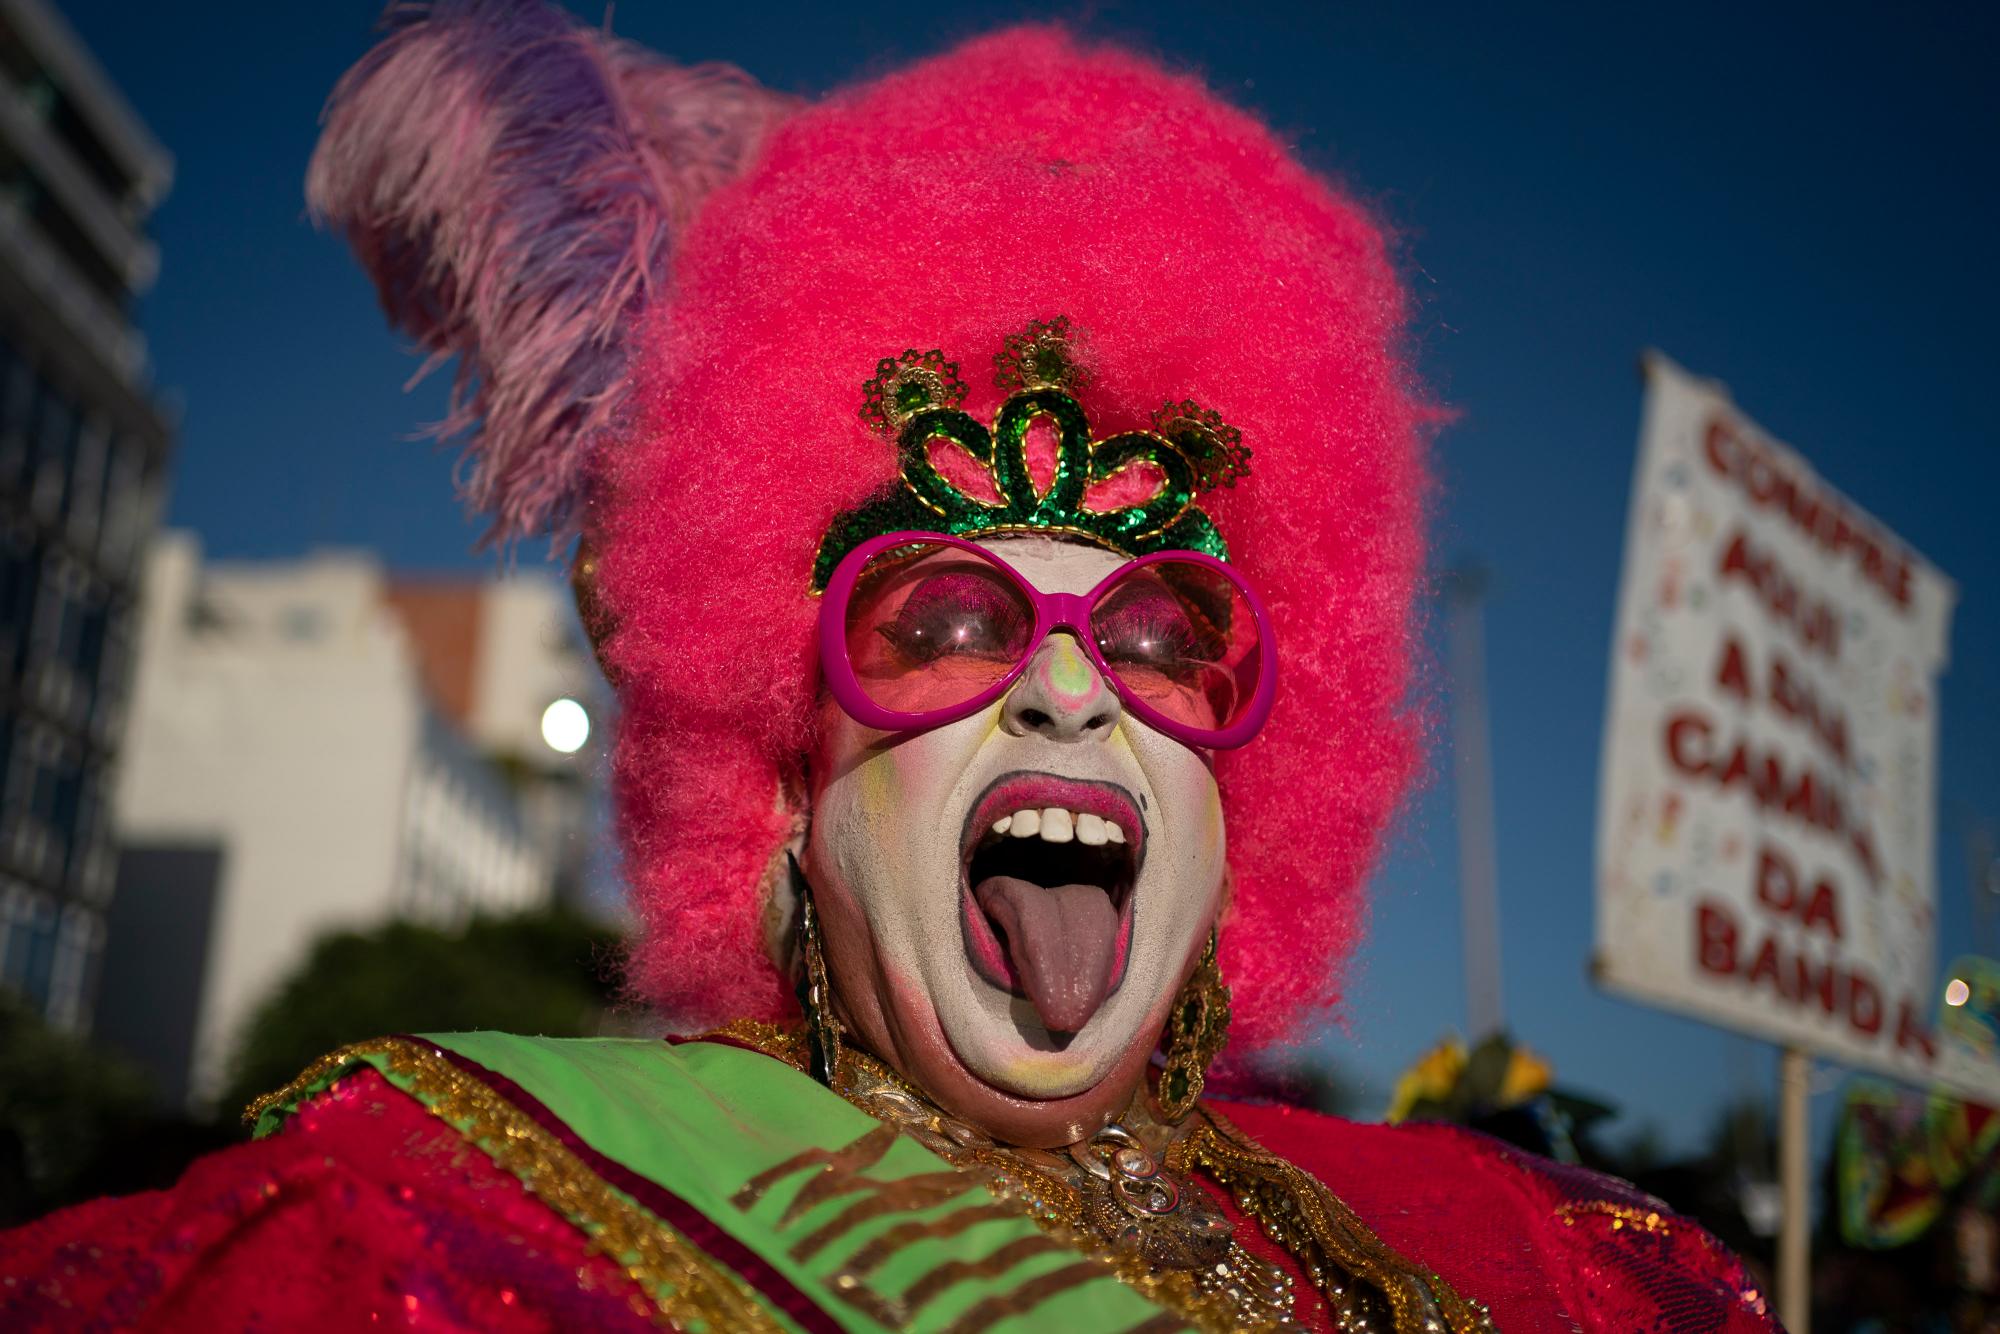 Una drag queen le saca la lengua juguetonamente durante la fiesta callejera “Banda de Ipanema” en Río de Janeiro, Brasil, el sábado 8 de febrero de 2020. Miles han comenzado a asistir a las populares fiestas callejeras, dos semanas antes del famoso festival de carnaval del mundo que comienza el 21 de febrero (AP Photo / Leo Correa)